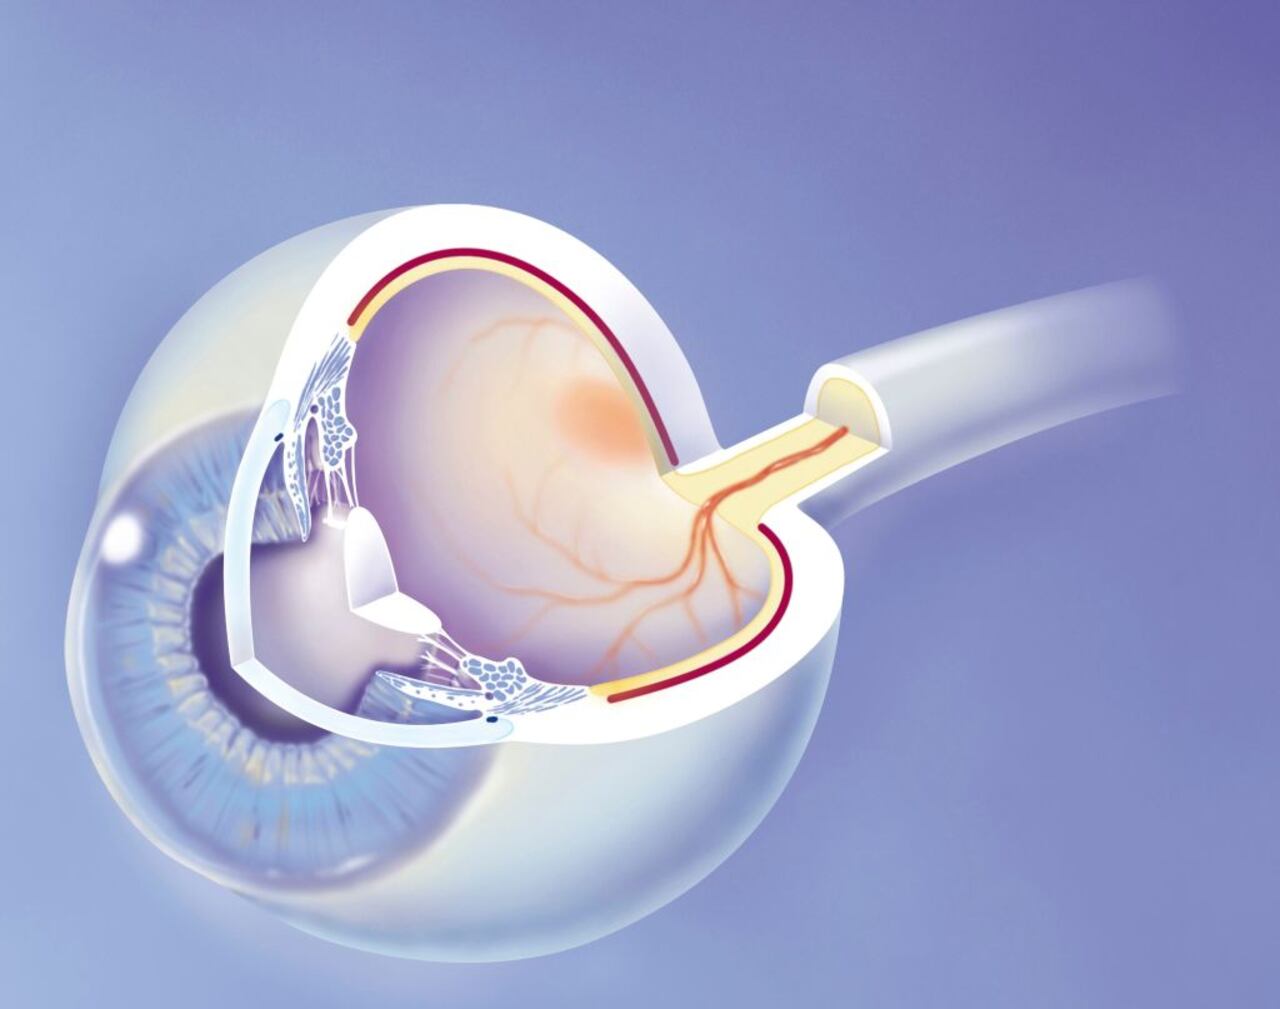 Anatomía del ojo que muestra las estructuras principales con, al frente (izquierda) la córnea, atrás la esclerótica. La córnea a través de la cual vemos el iris detrás del iris el cristalino conectado al proceso ciliar por las fibras zonulares.